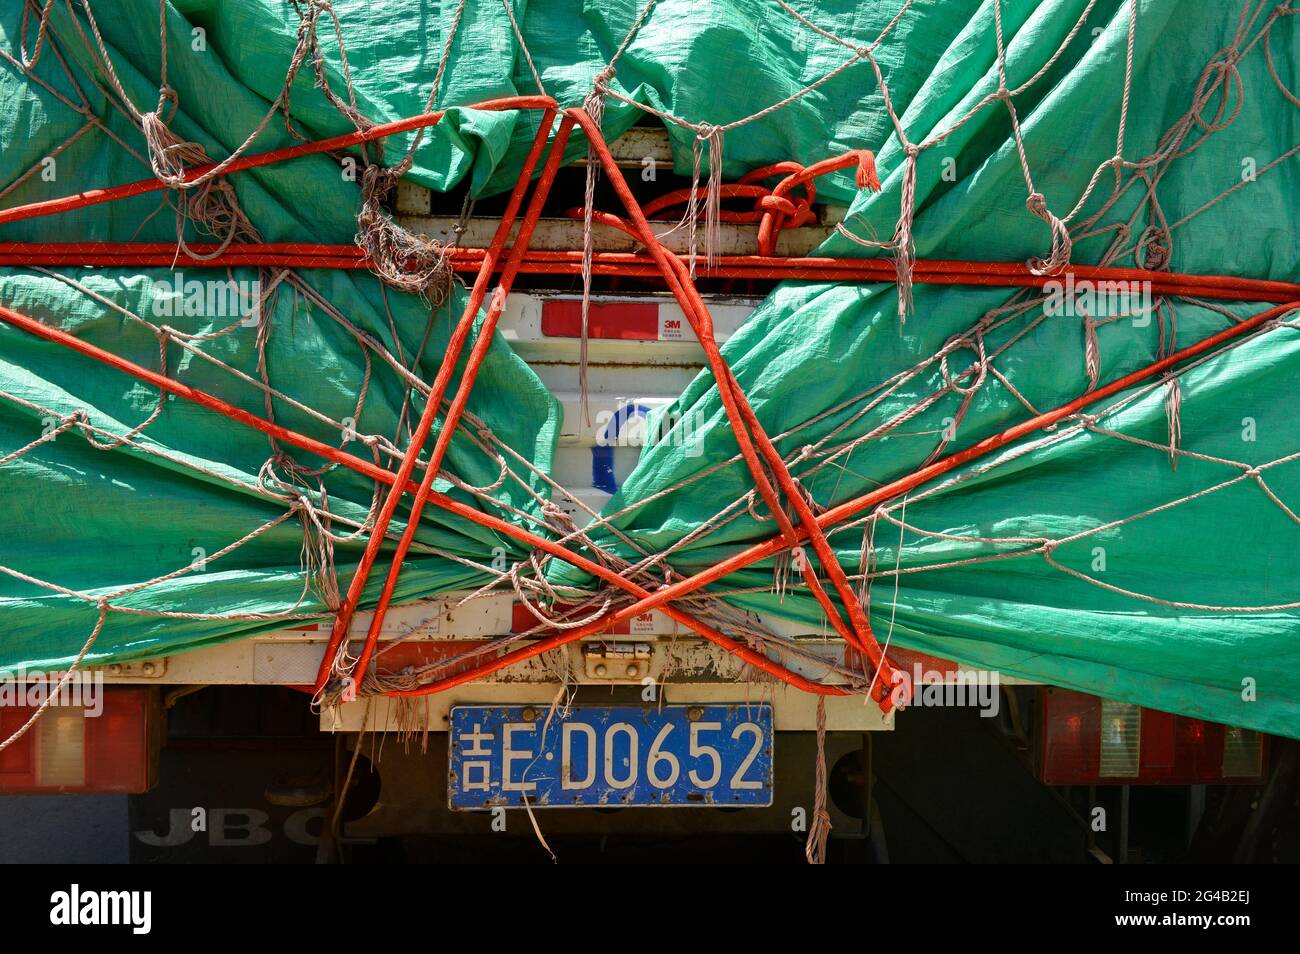 Un lienzo de plástico verde estrechamente atado cubre un camión bien cargado en Shenyang, China Foto de stock